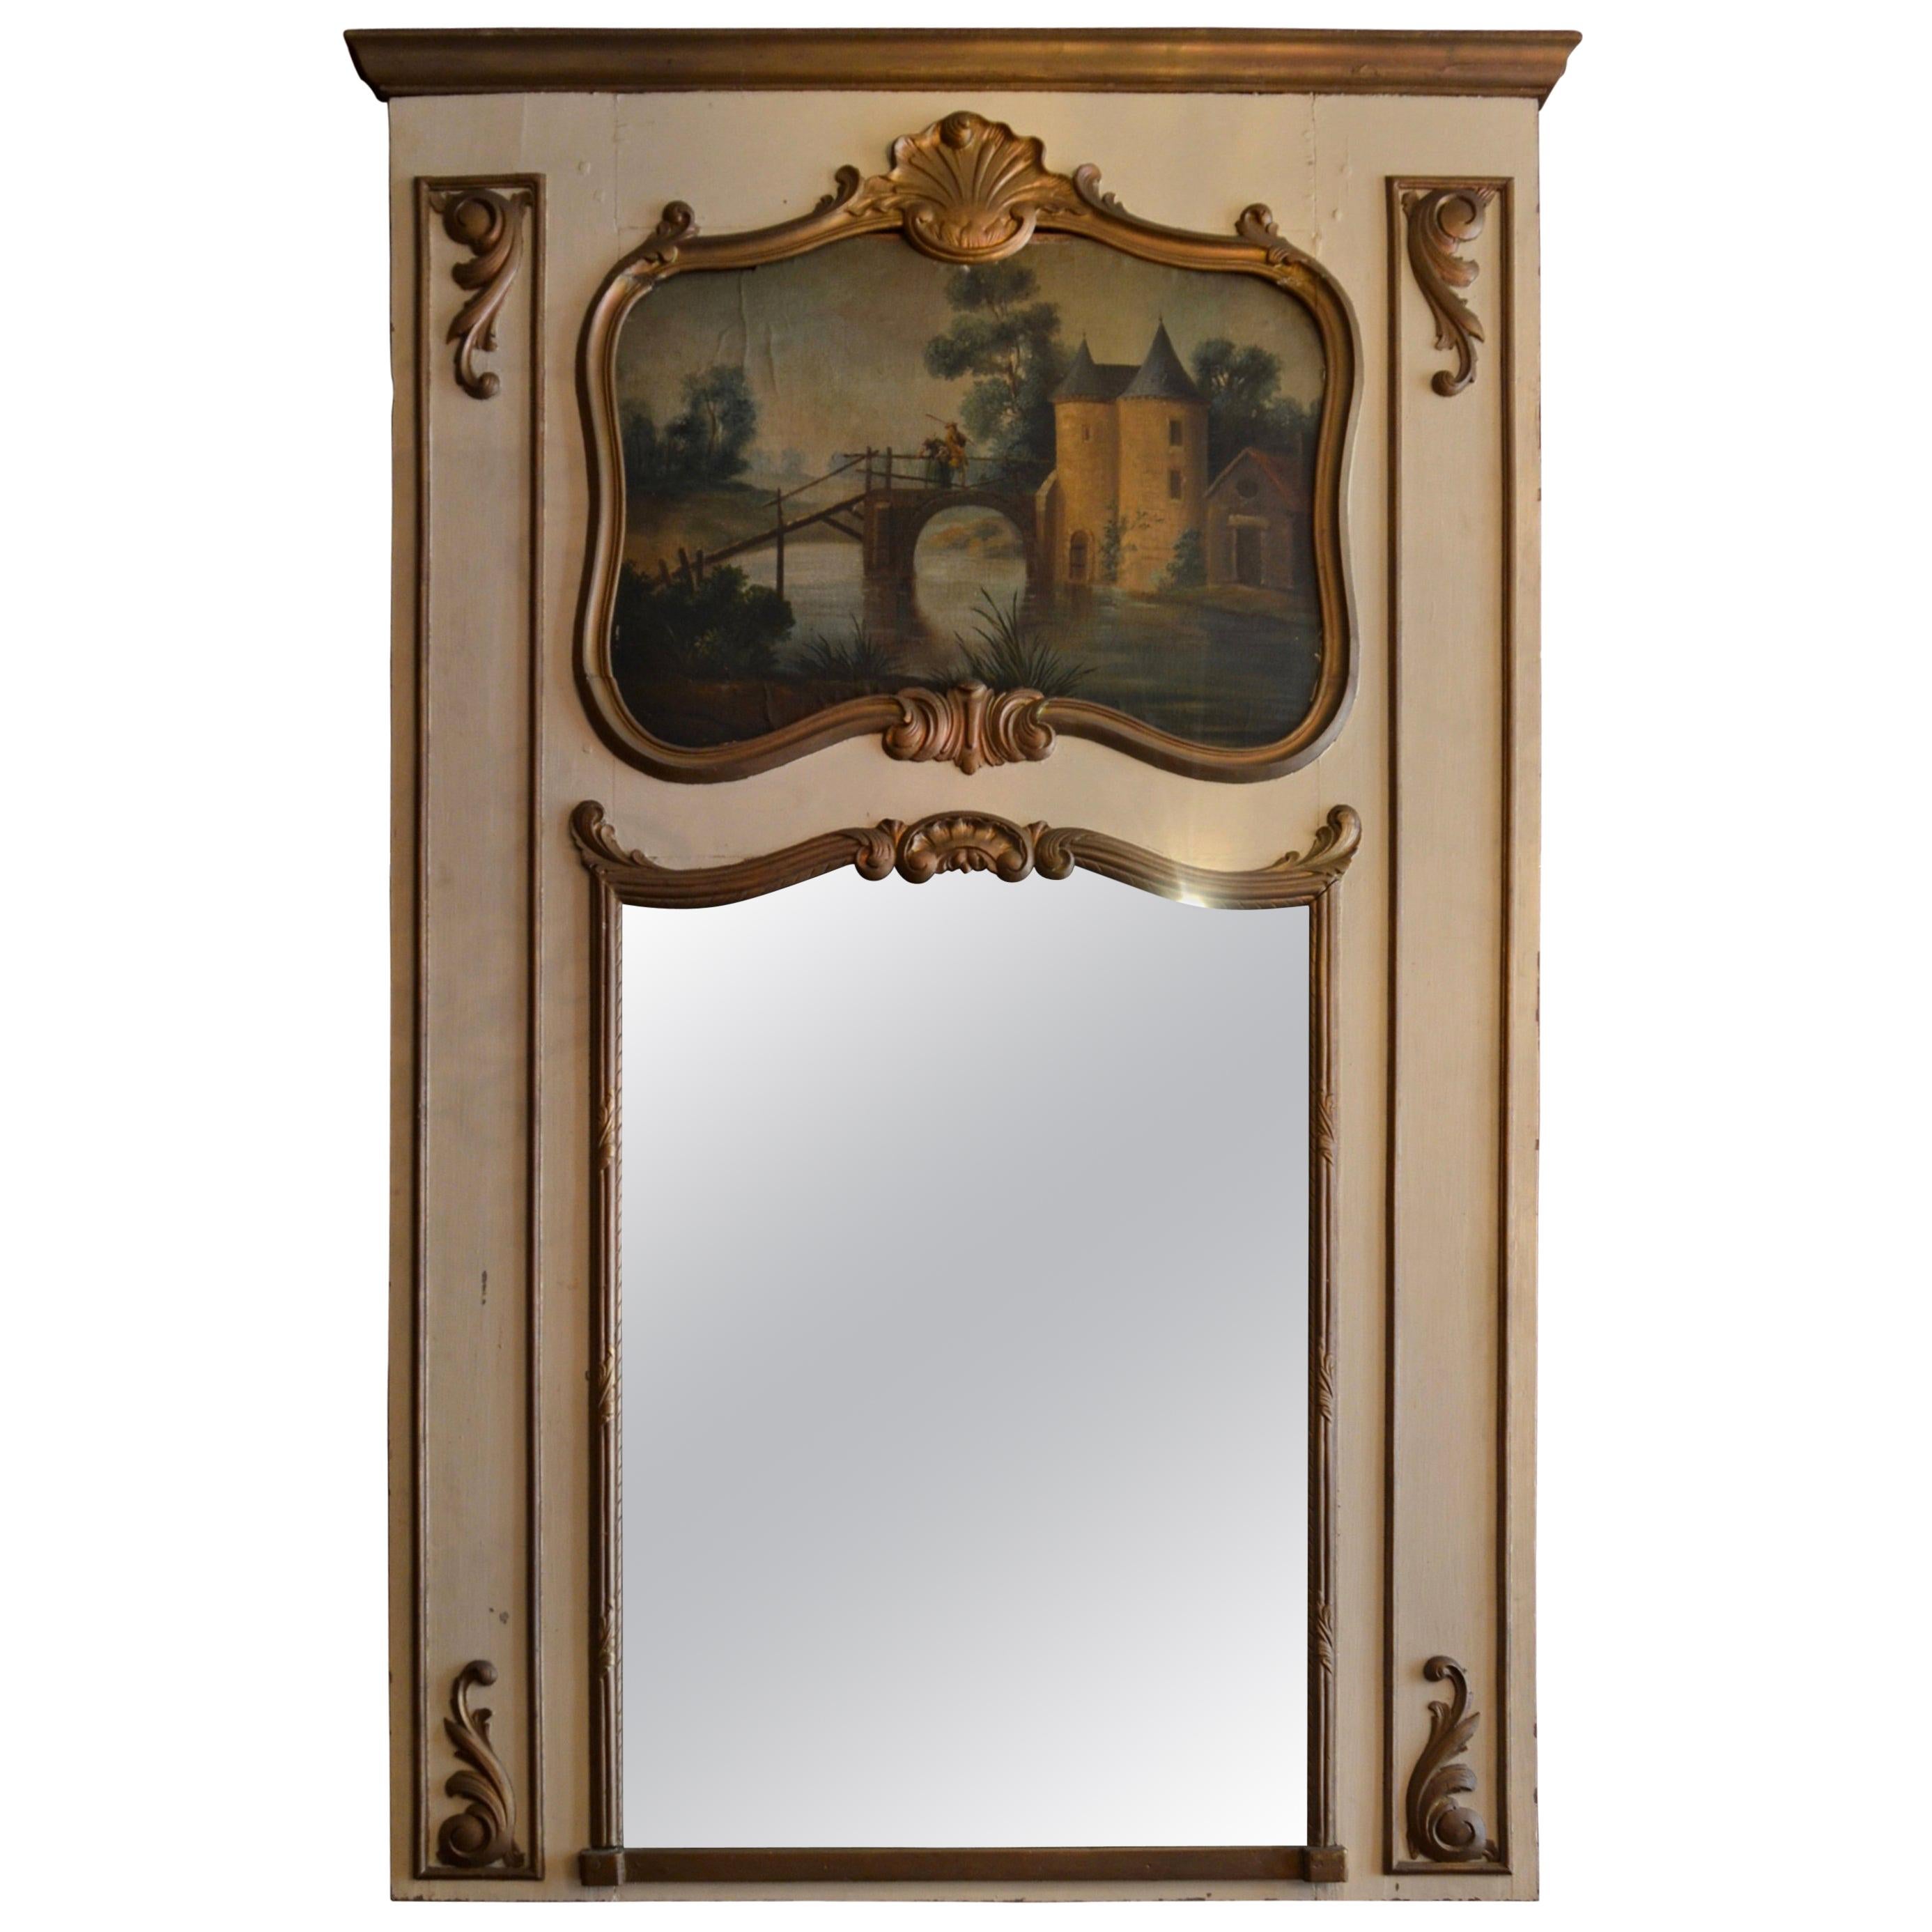 Antiker französischer Trumeau-Spiegel aus Holz mit mehrfarbiger Landschaftssszene, antik